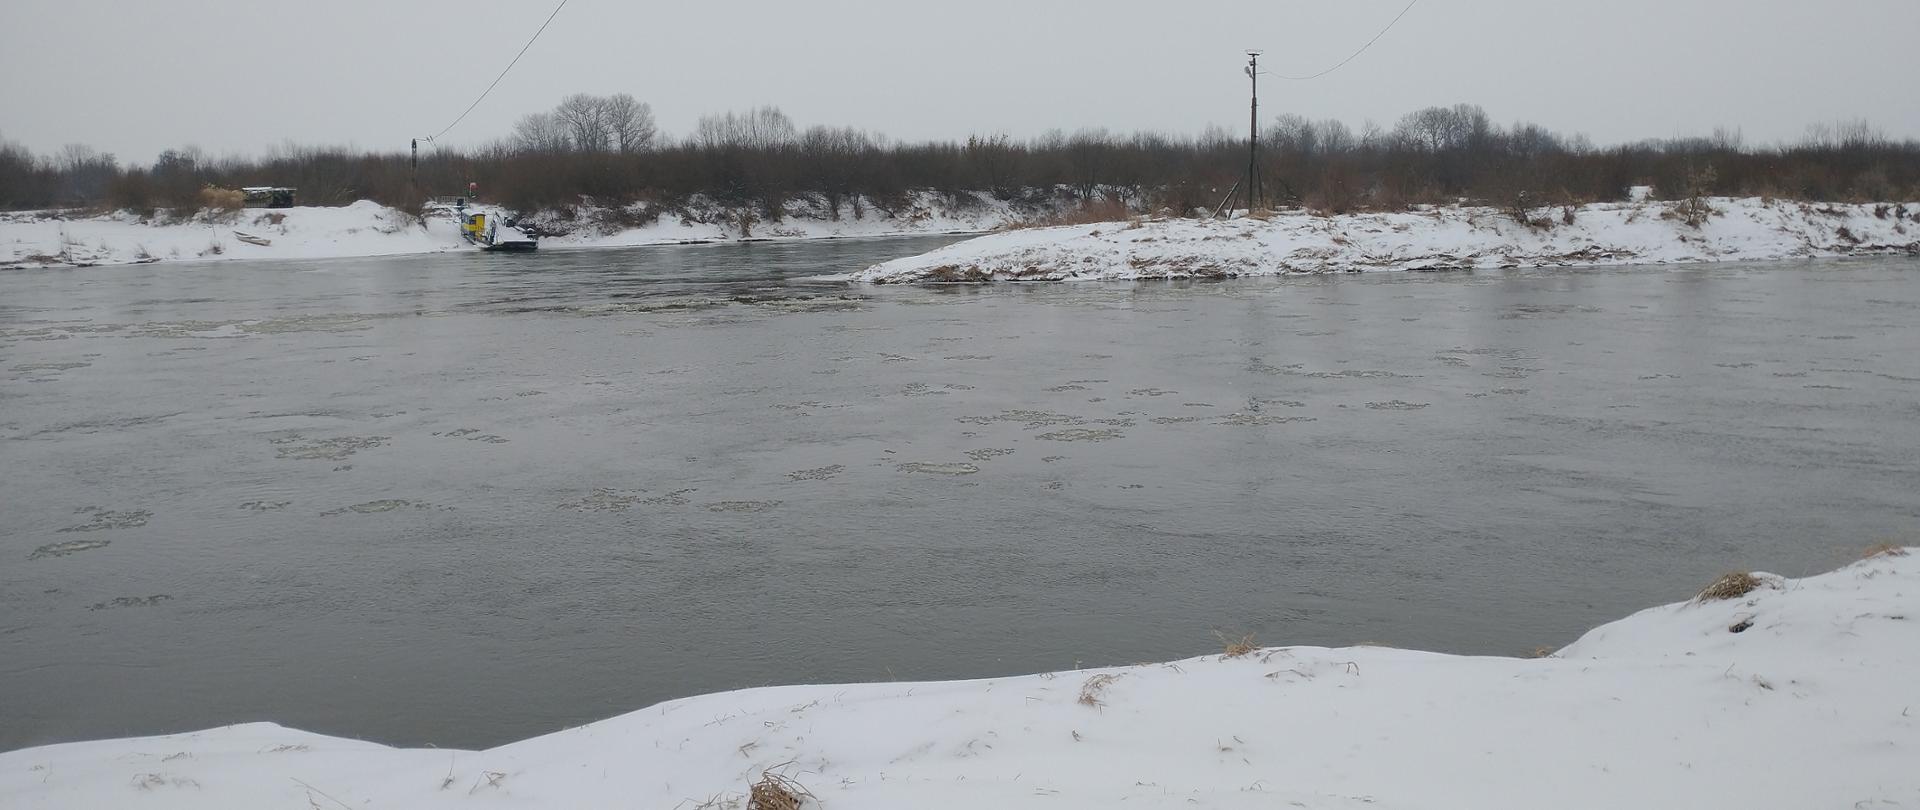 Zdjęcie przedstawia stan wody przy ujście rzeki Dunajec do Wisły w miejscowości Opatowiec.